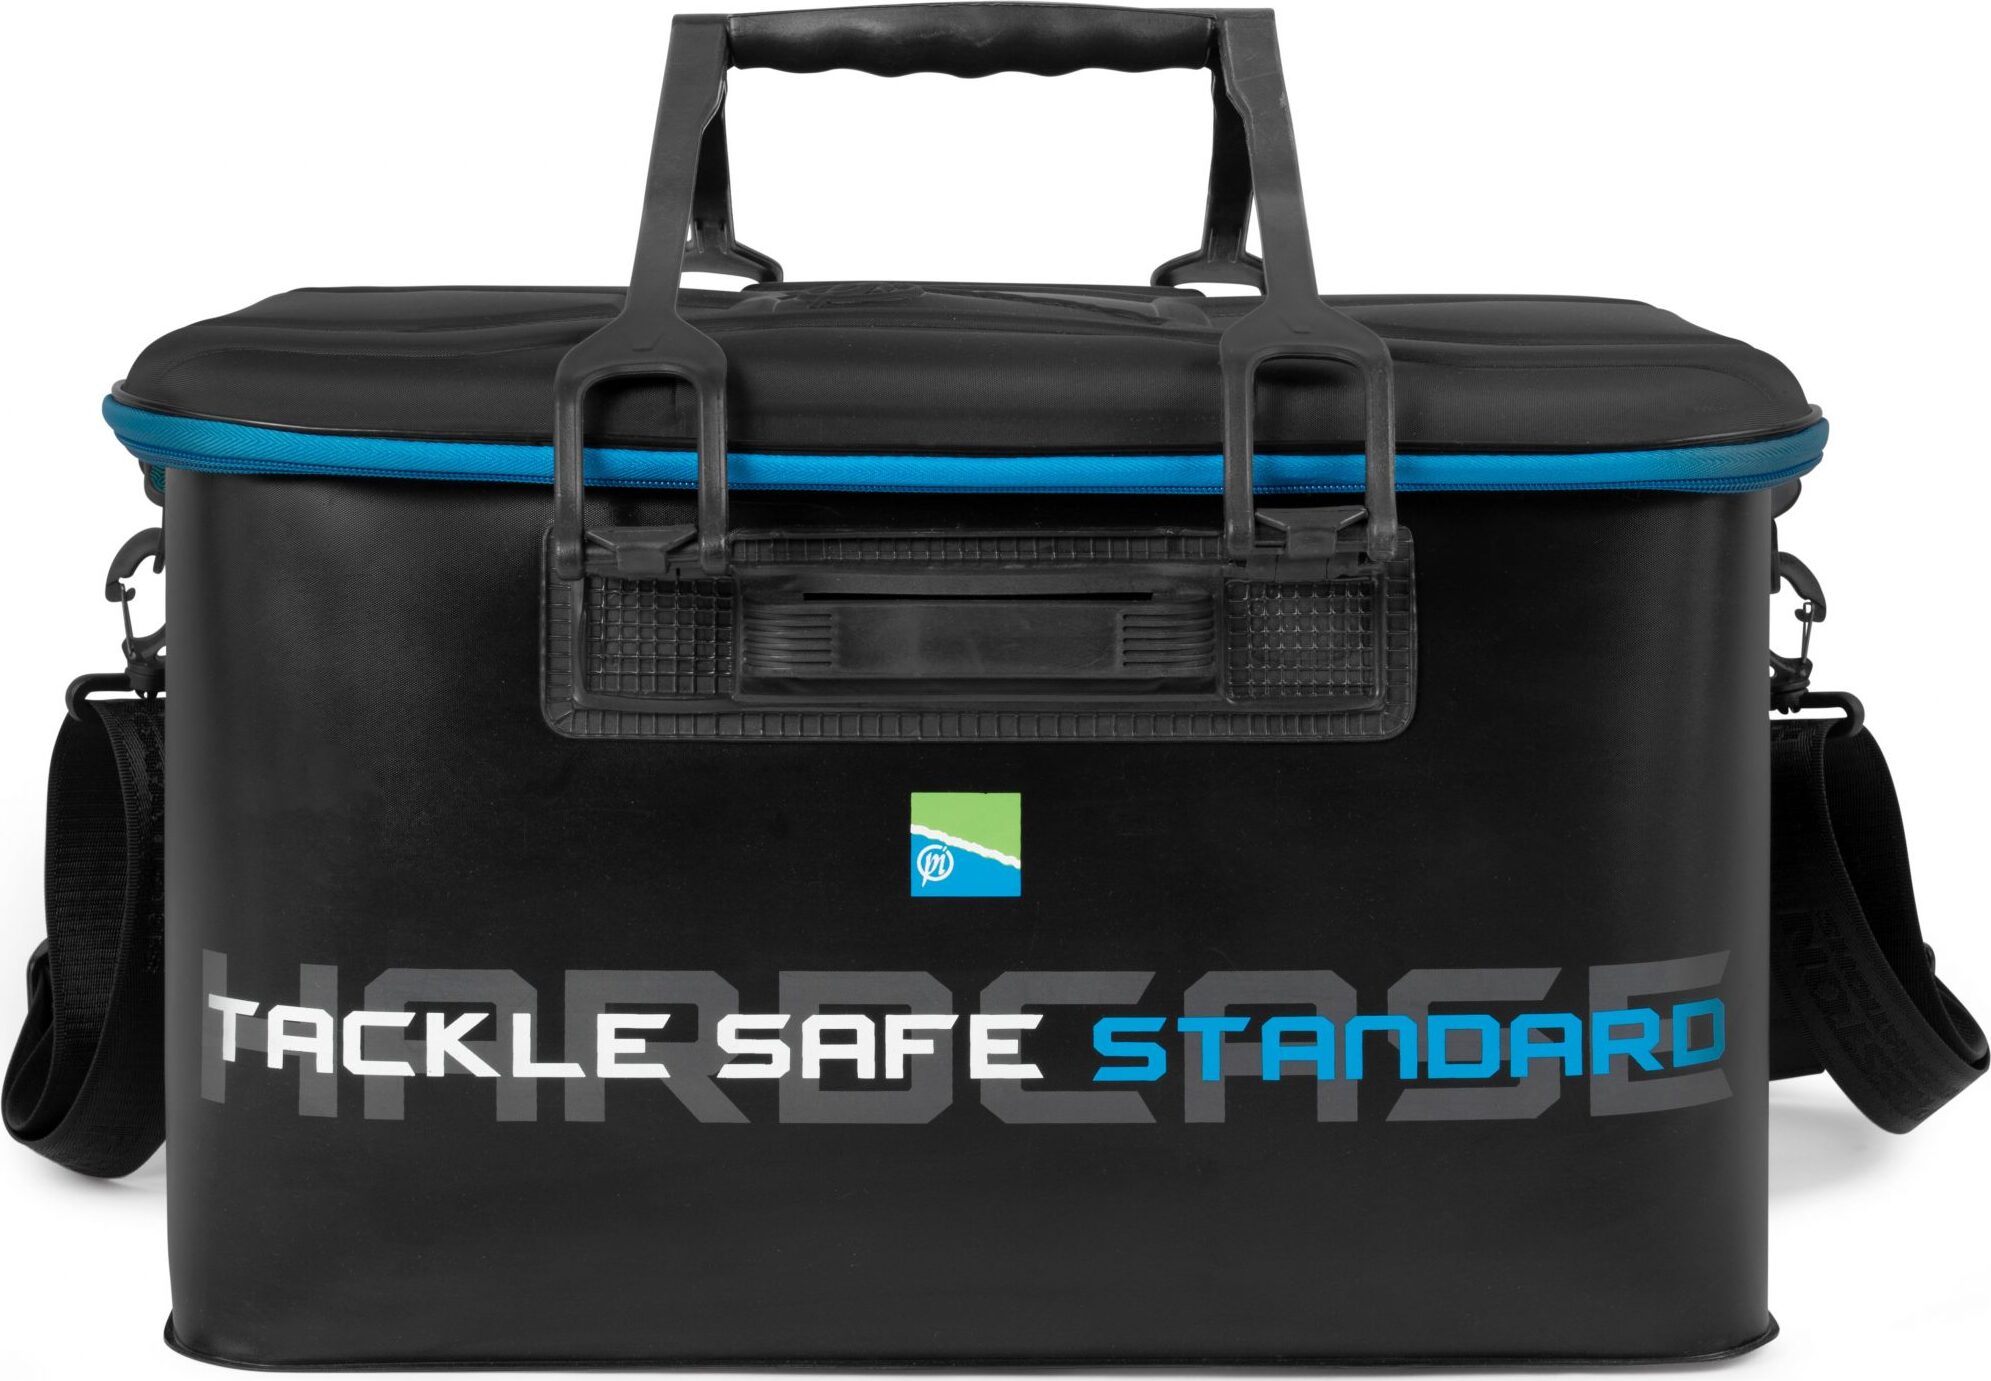 Preston Innovations Hardcase Tackle Safe - Standard – Glasgow